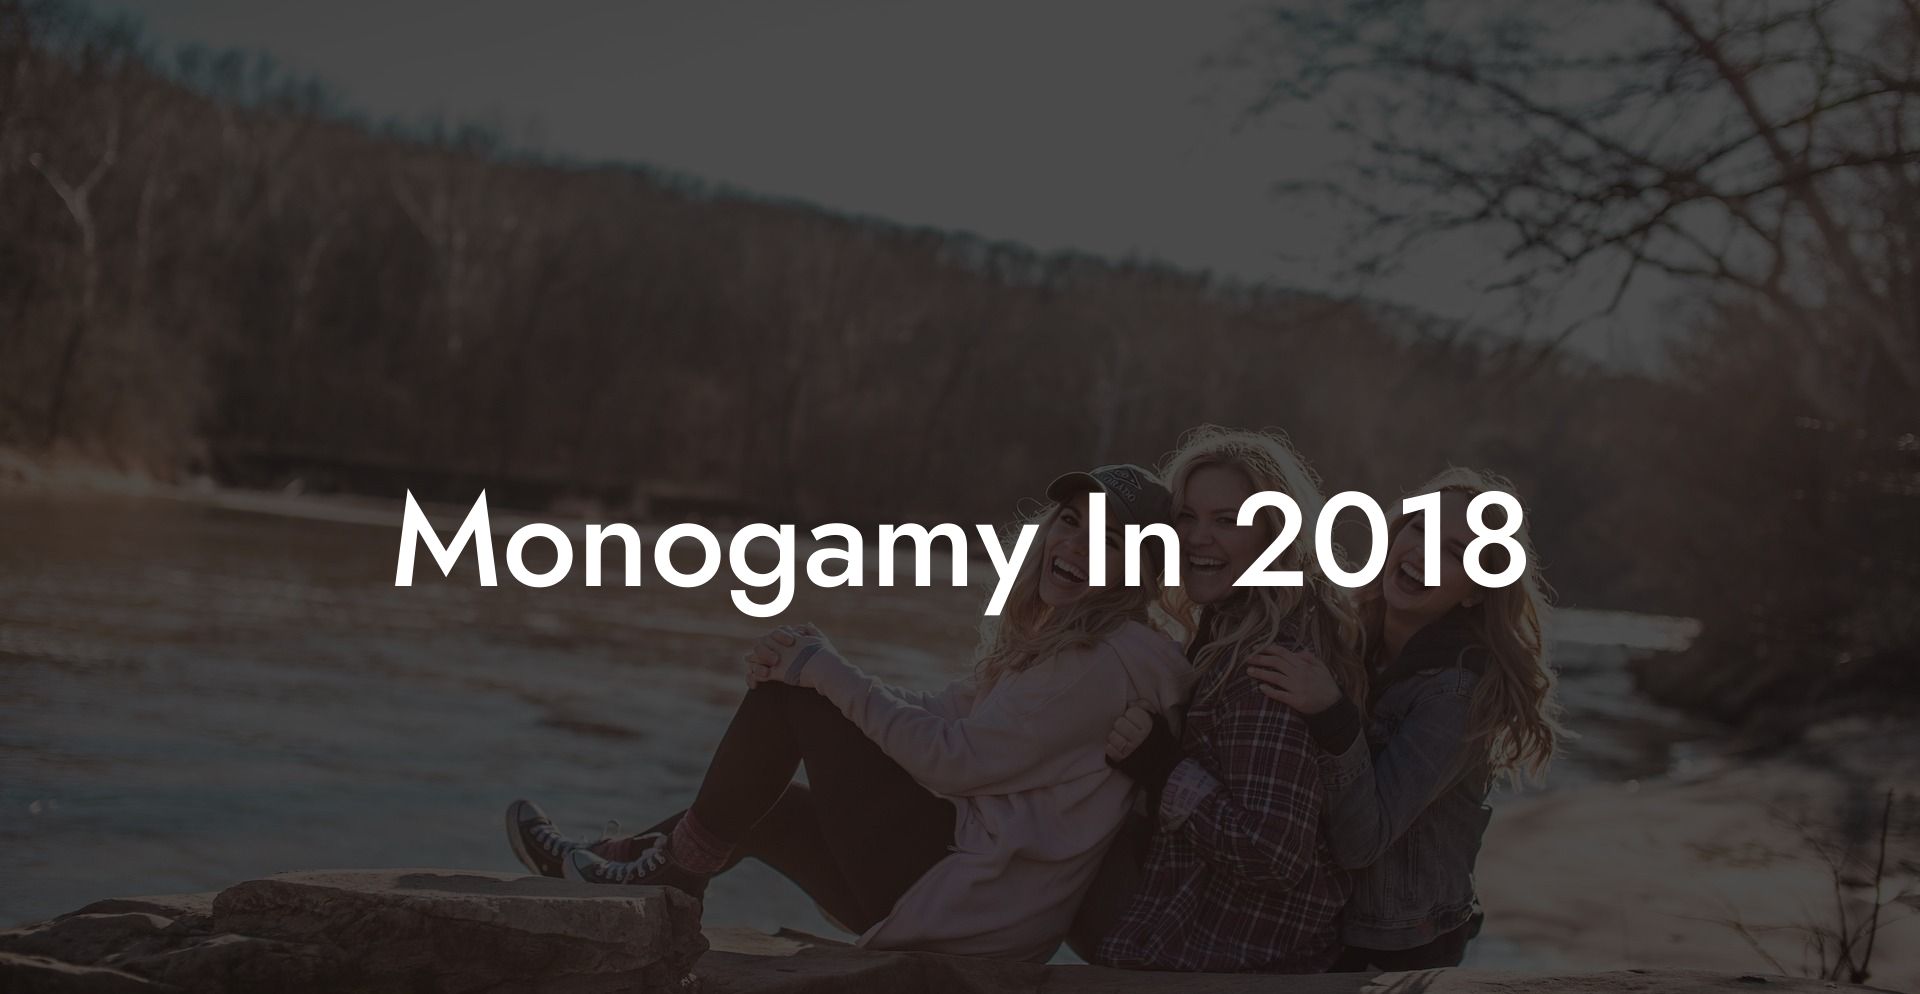 Monogamy In 2018